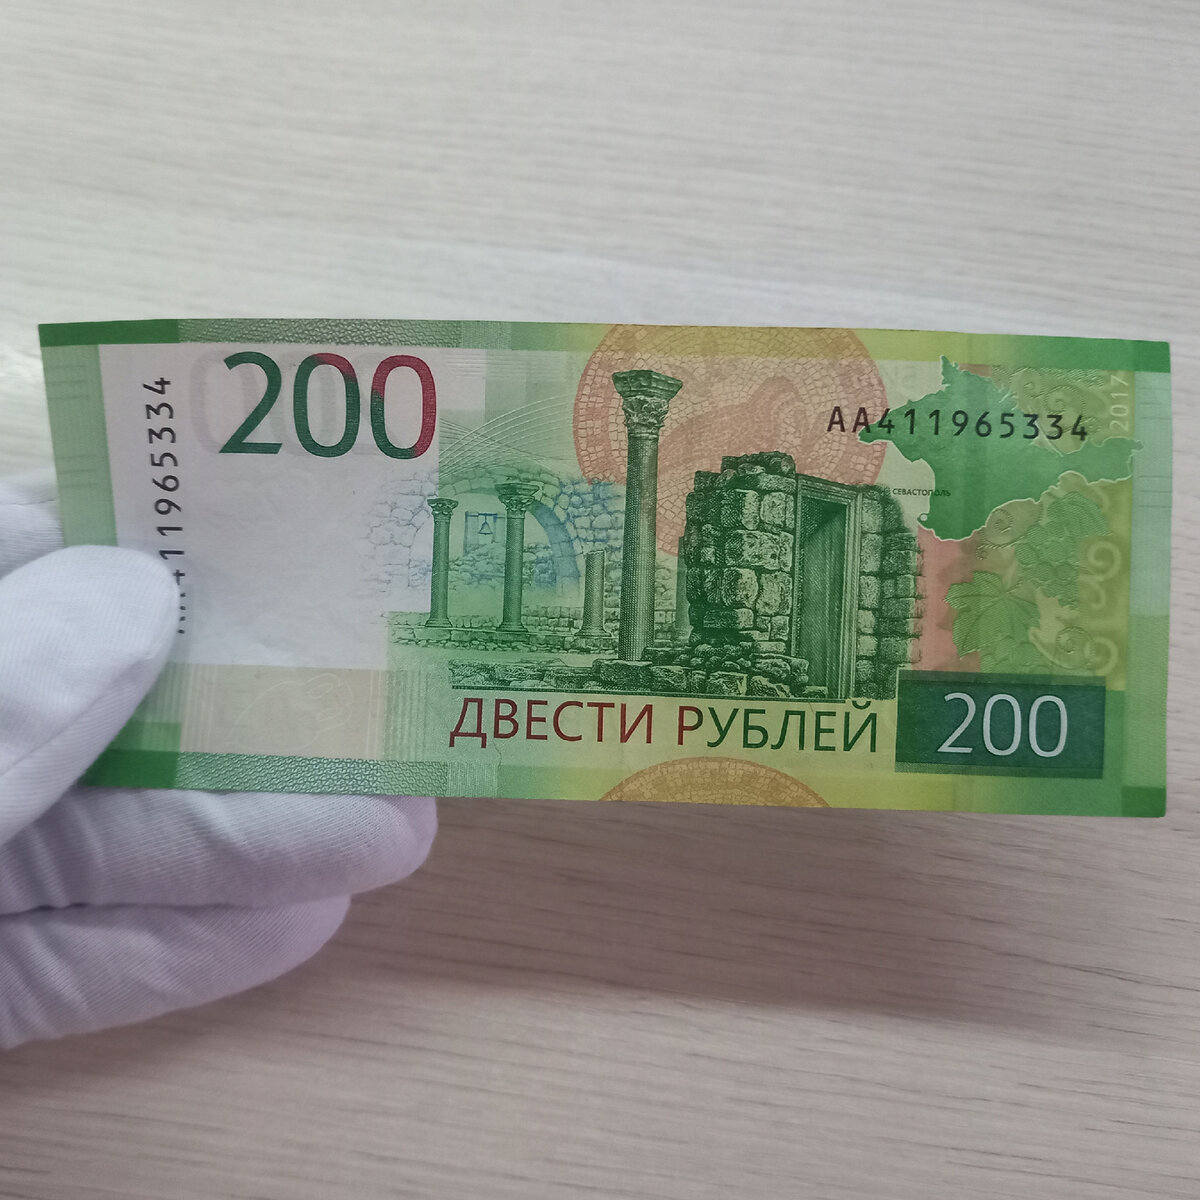 200 рублей плюс 200 рублей. 200 Рублей банкнота. 200 Рублей бумажные. 200 Руб новые. Новая 200 рублевая купюра.